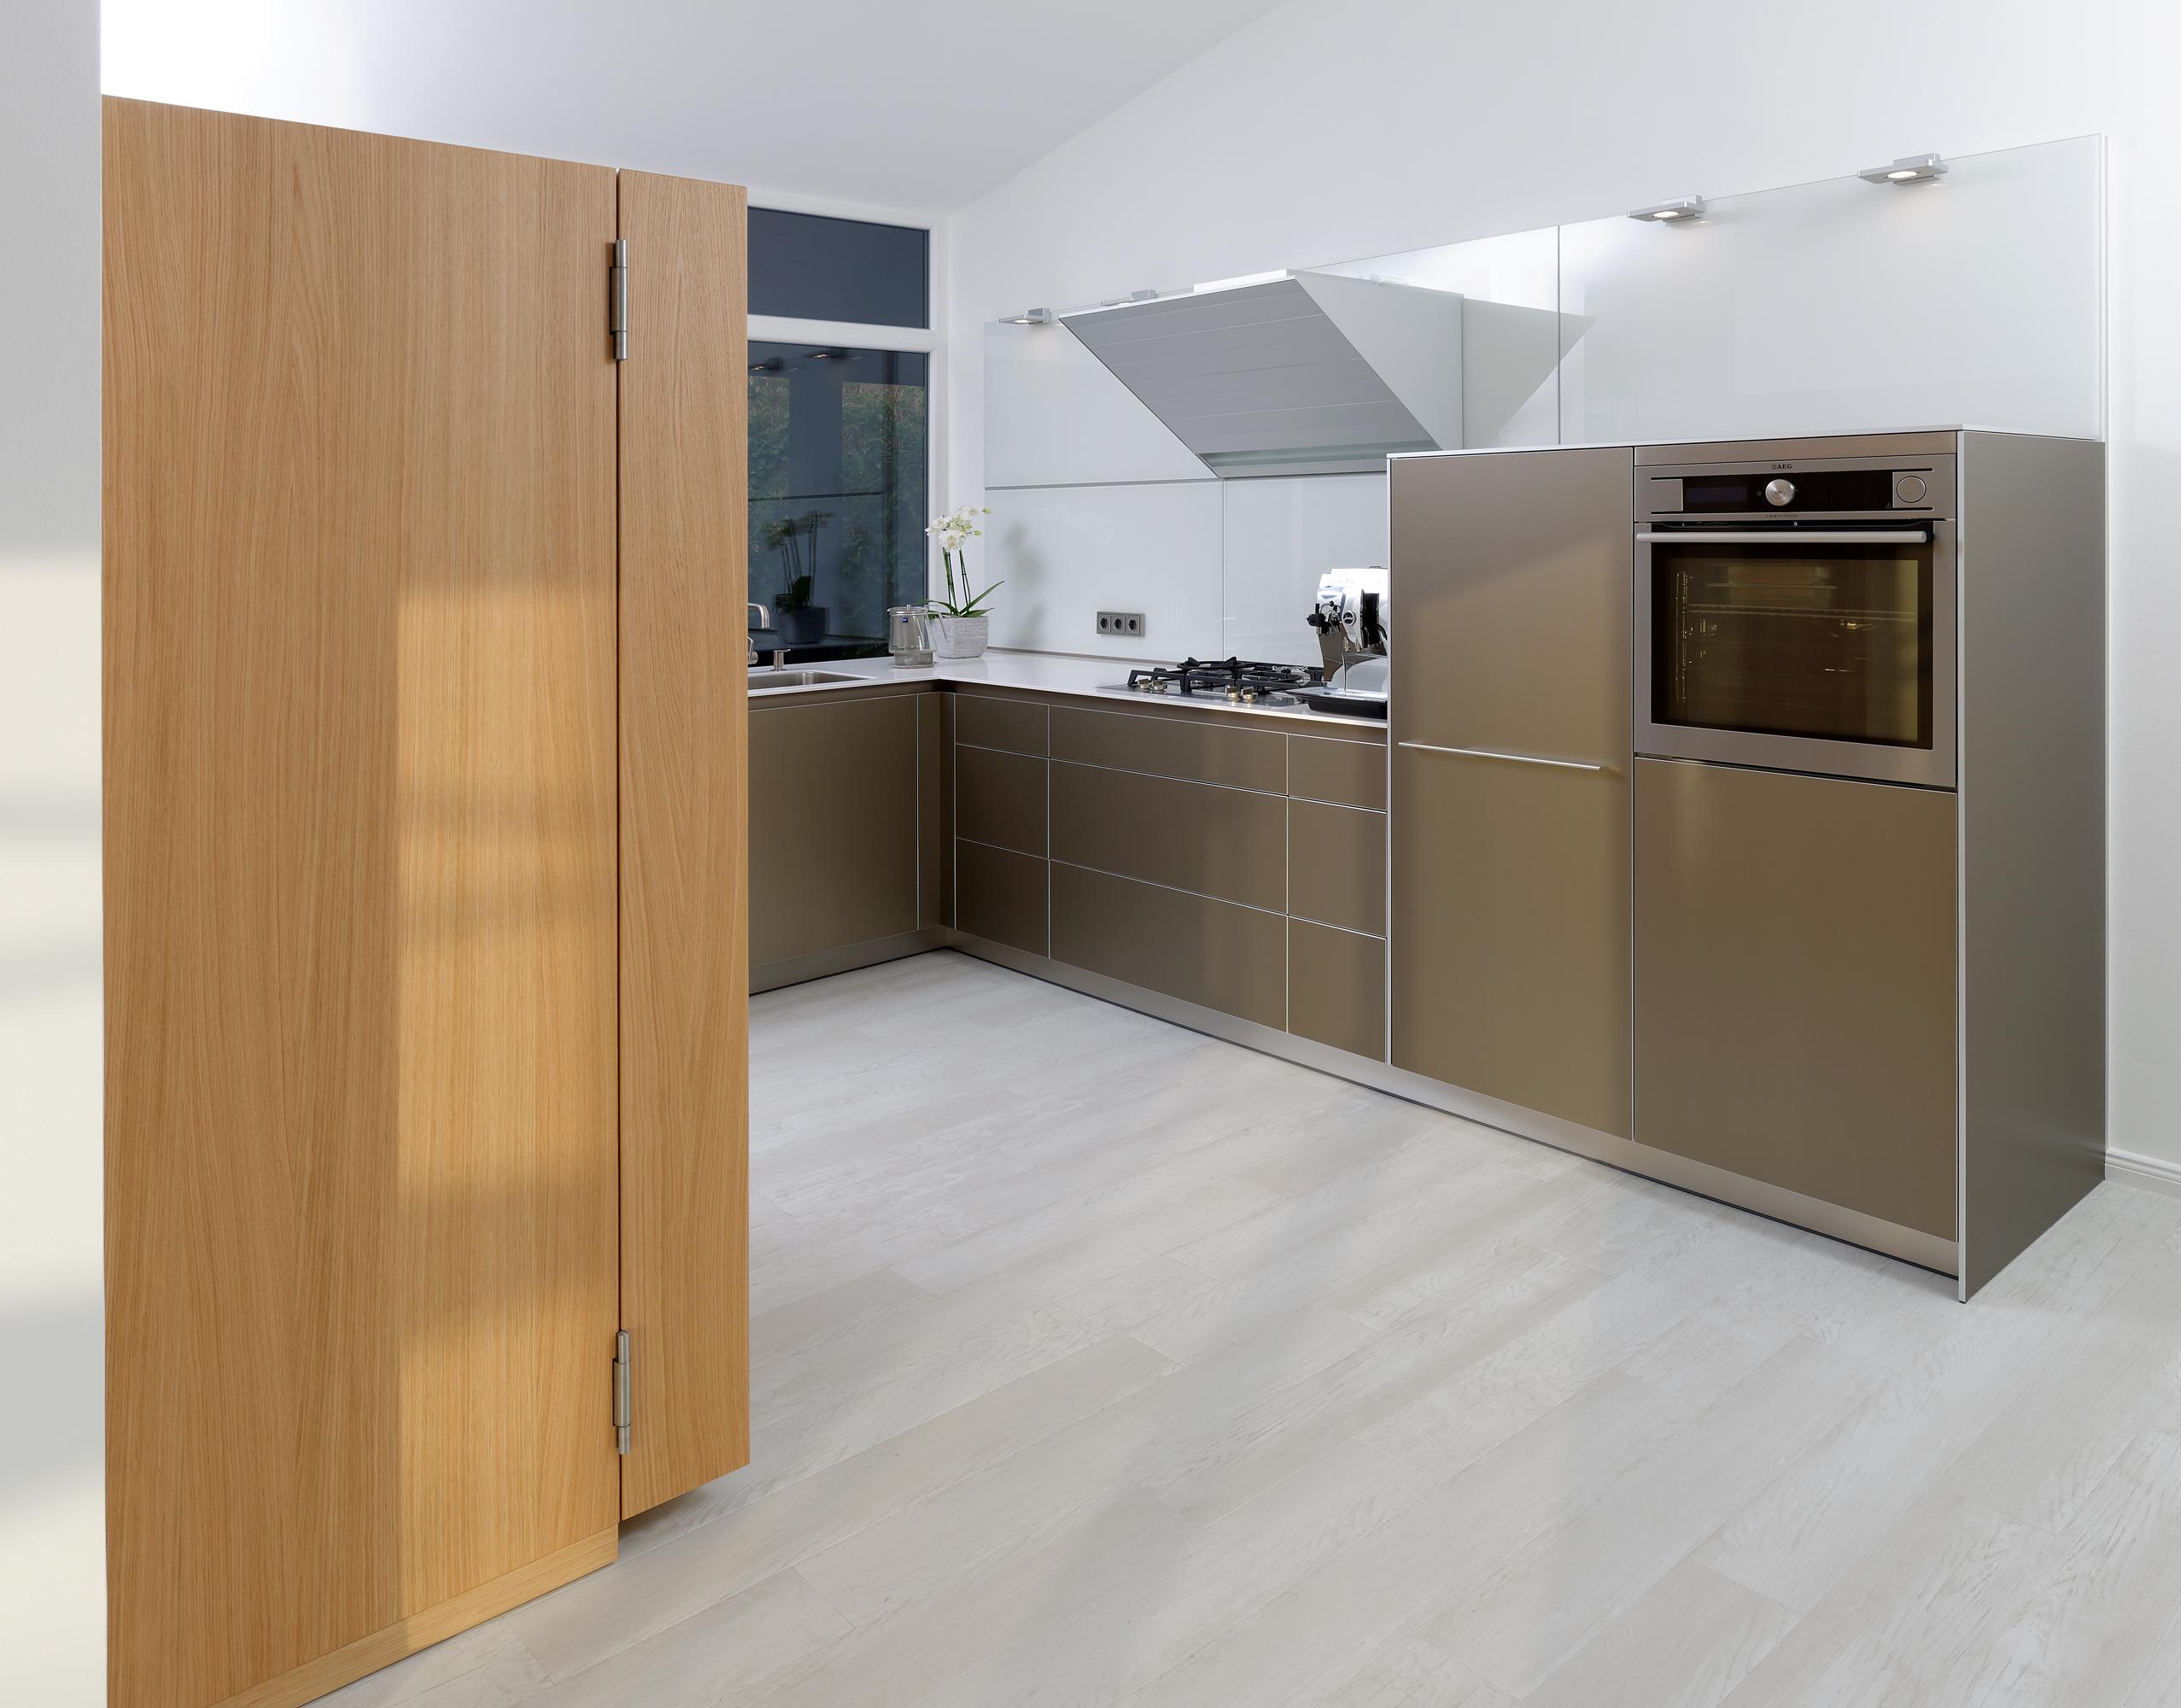 Ansicht der Küchenfronten #küche #dunstabzugshaube ©bulthaup Küche & Feuer GmbH